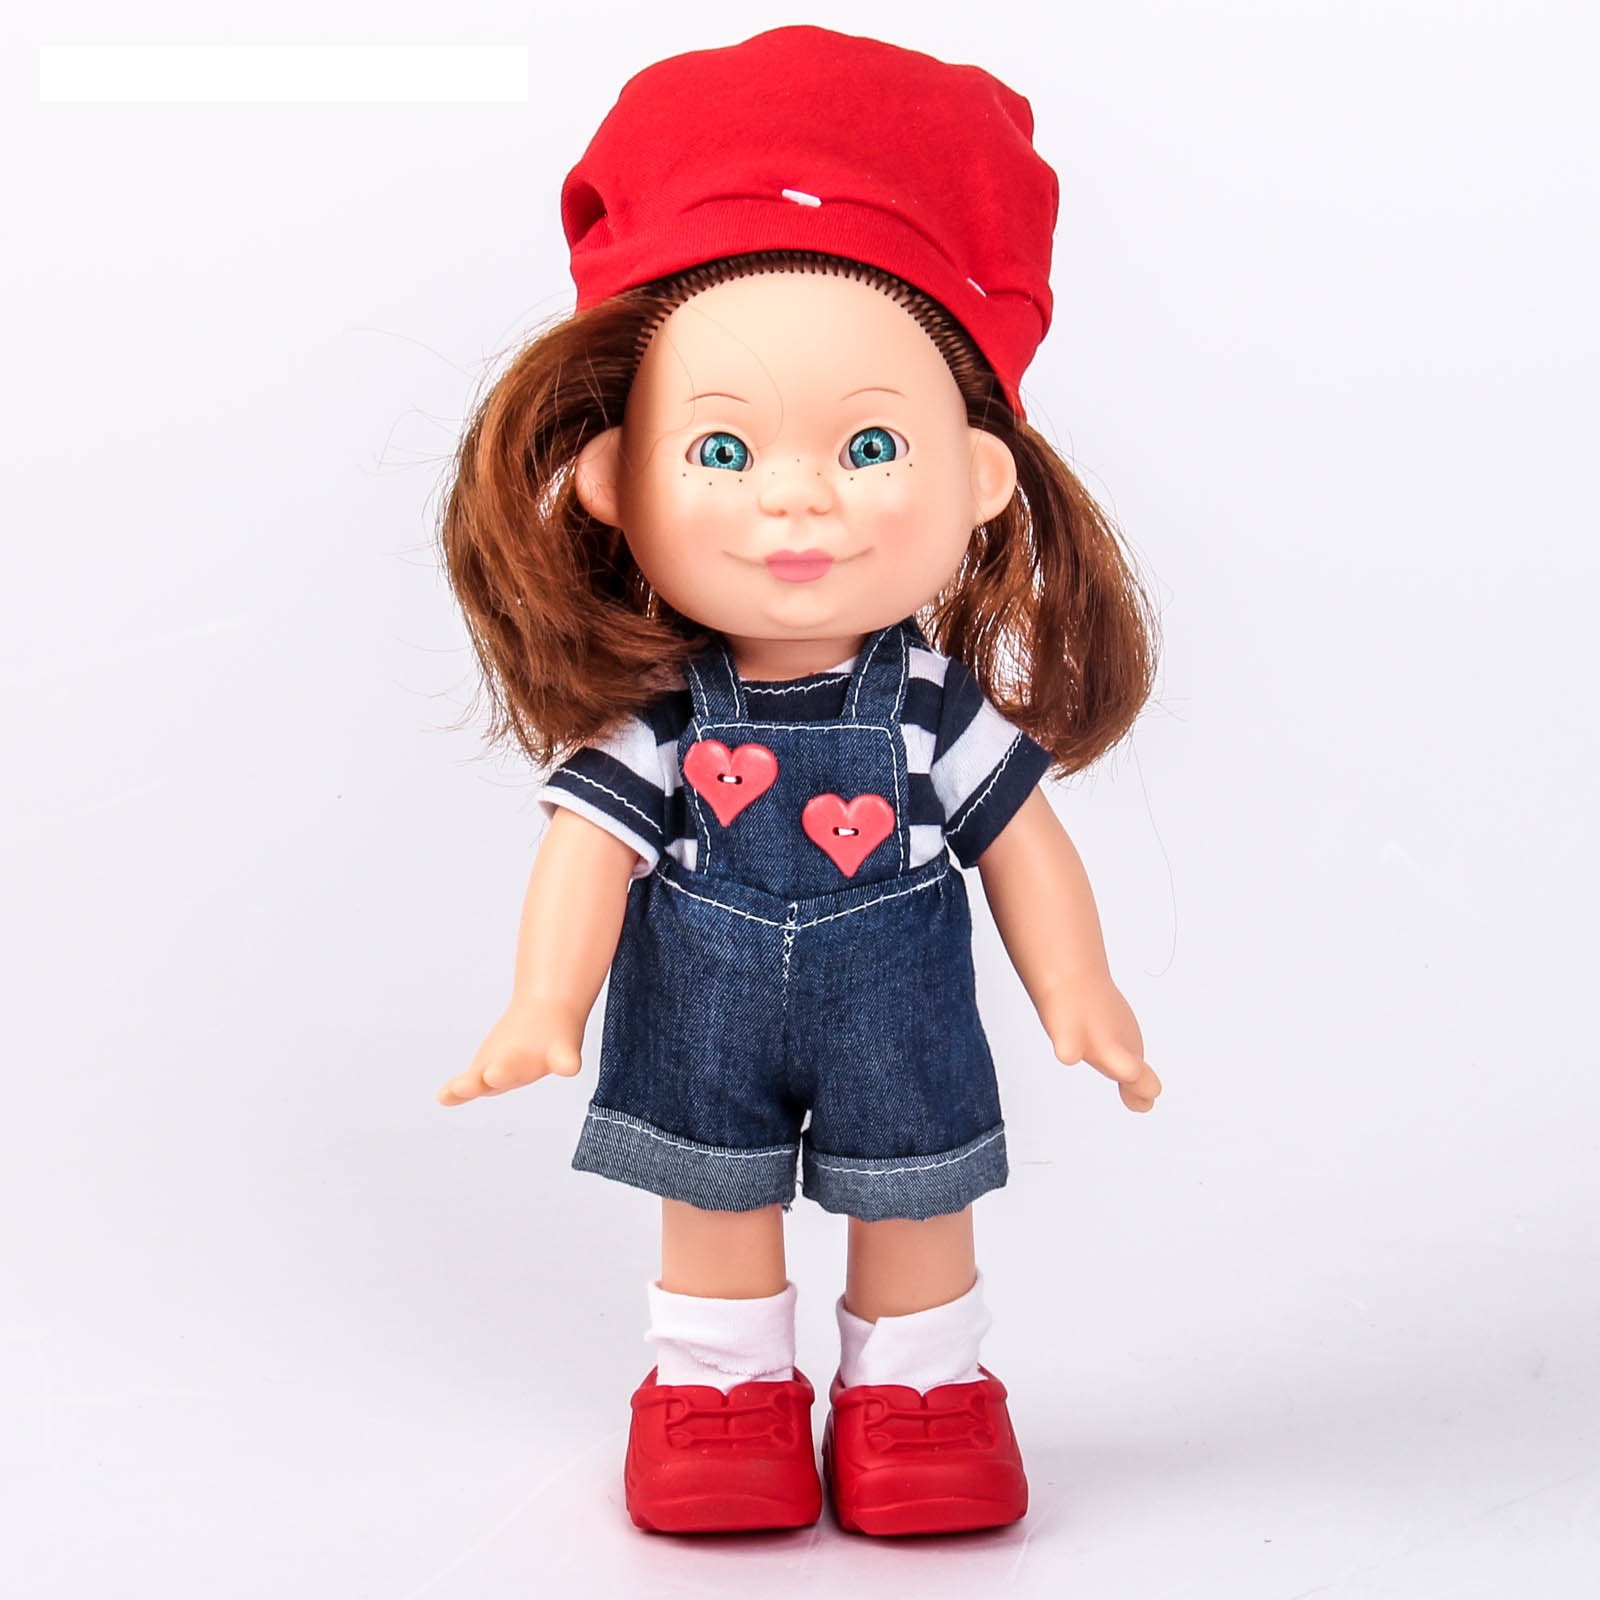 Куклы для девочек, купить в Киеве и Украине | интернет магазин 